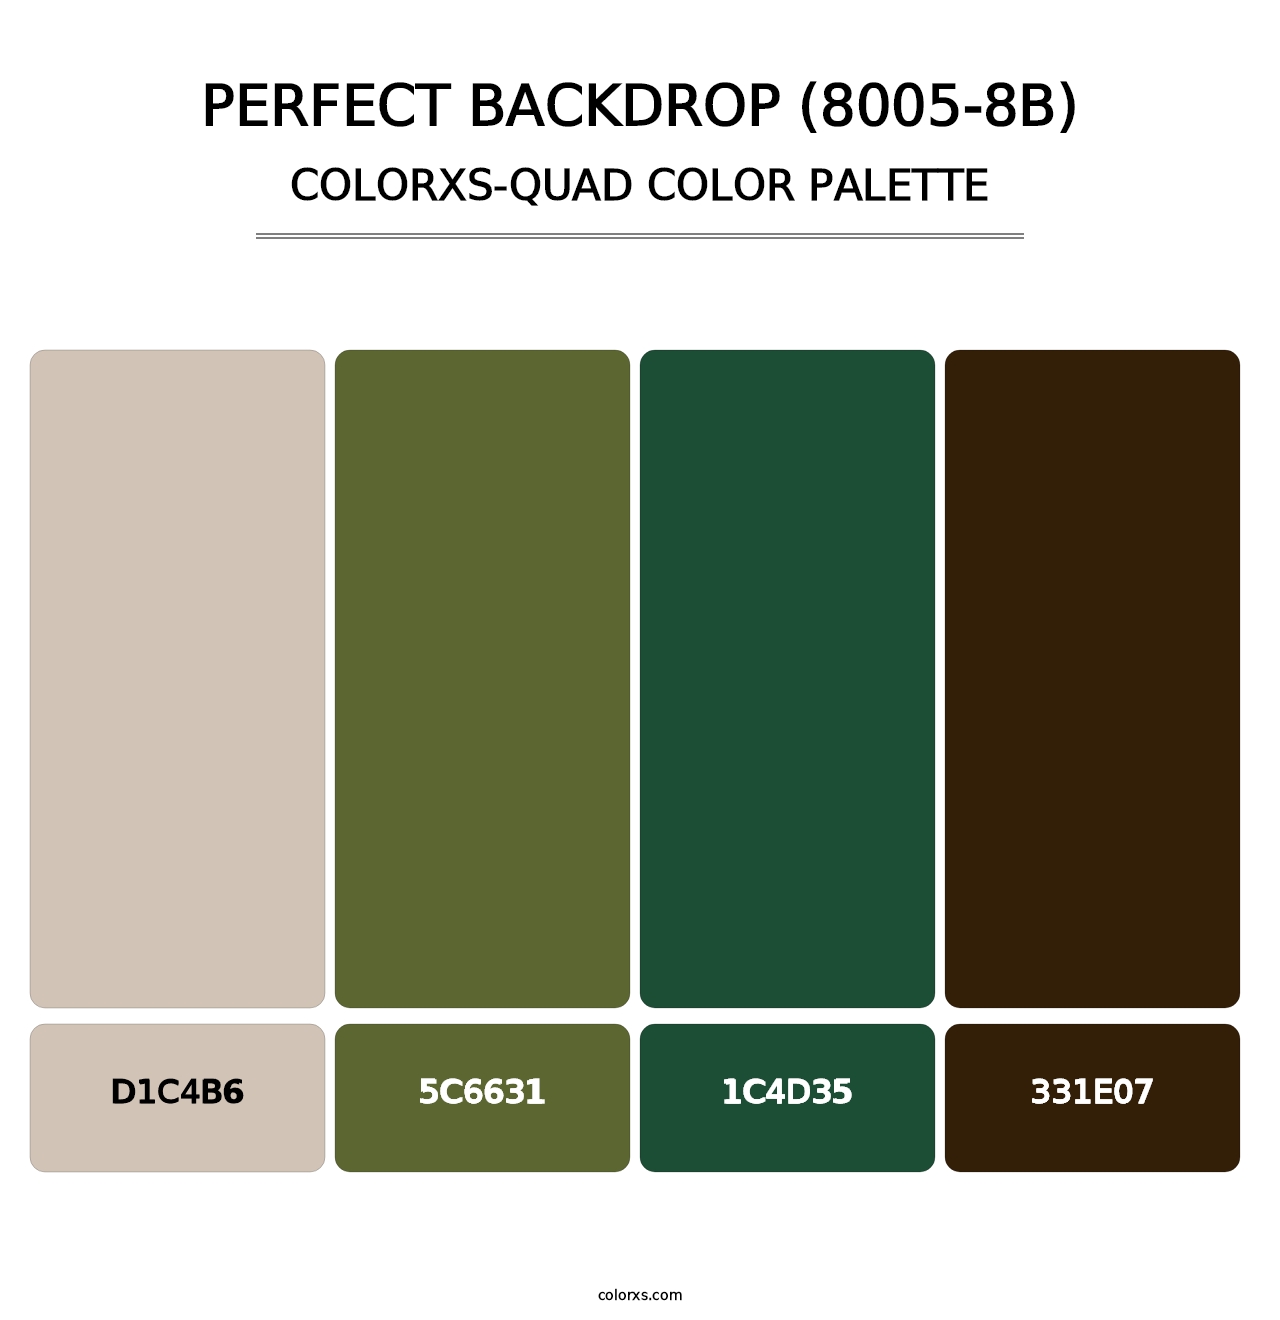 Perfect Backdrop (8005-8B) - Colorxs Quad Palette